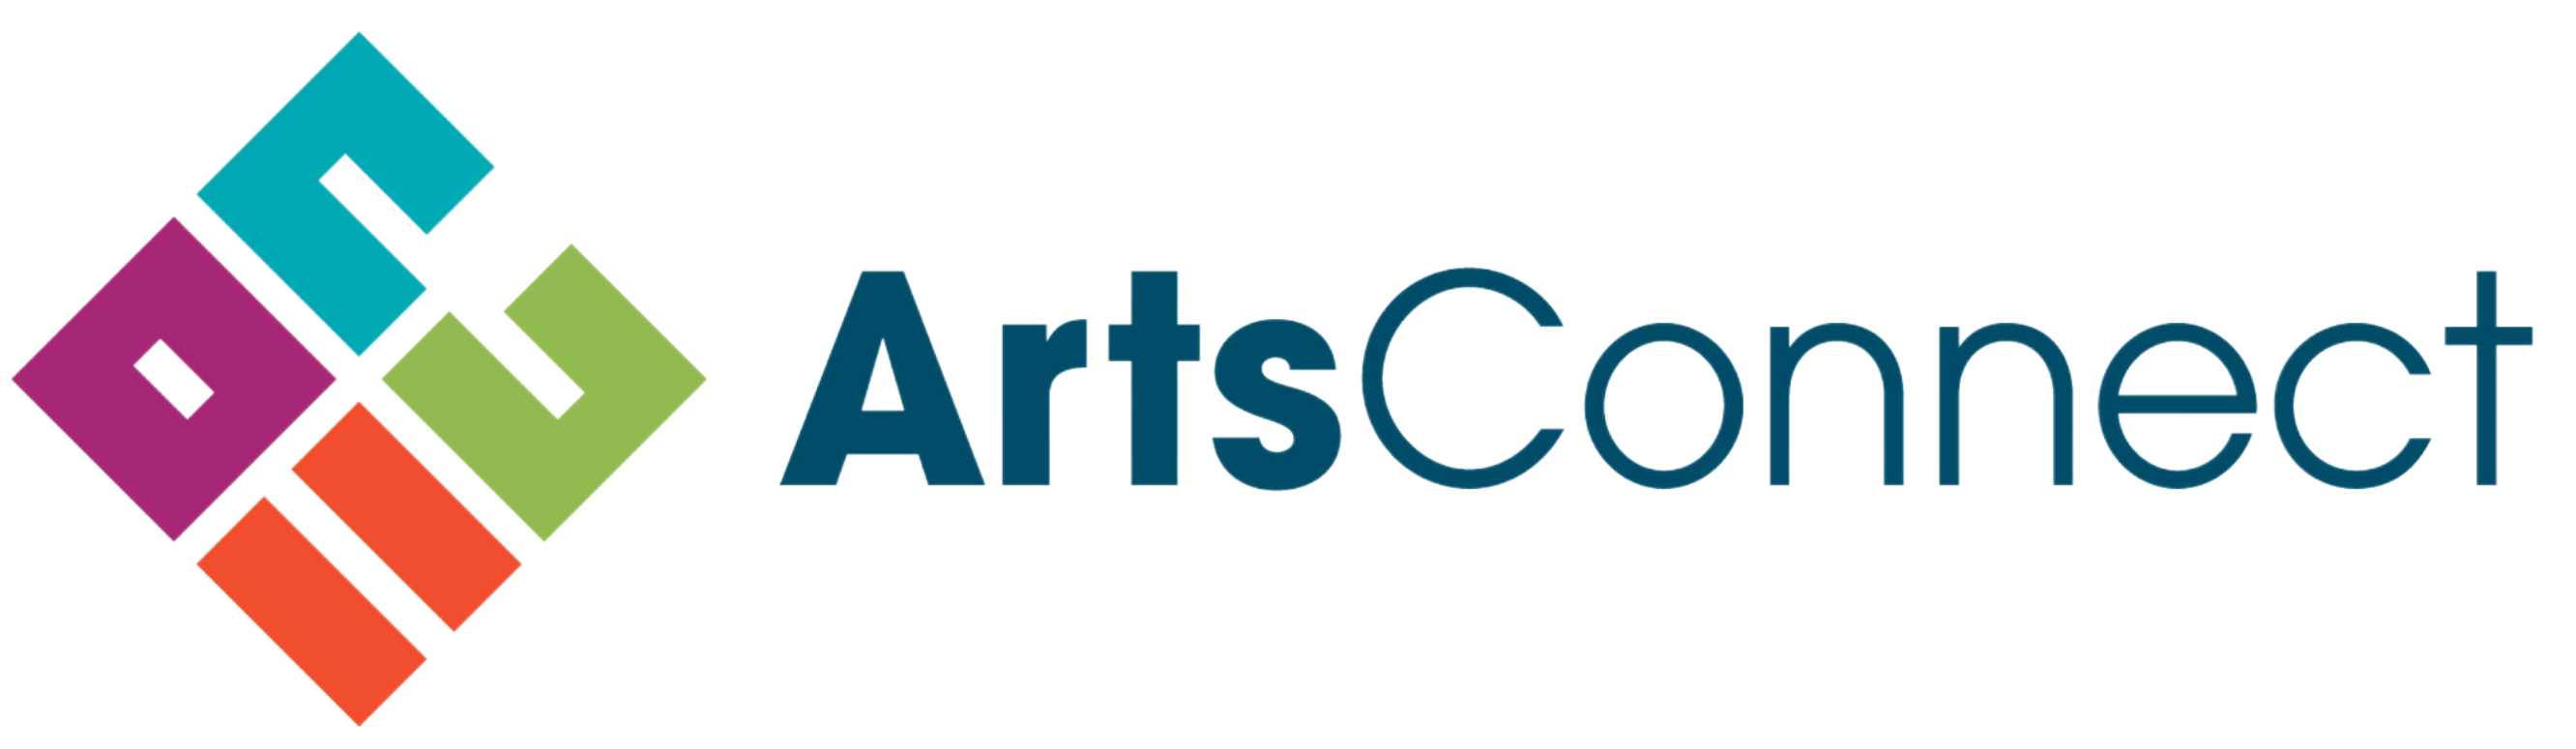 ArtsConnect